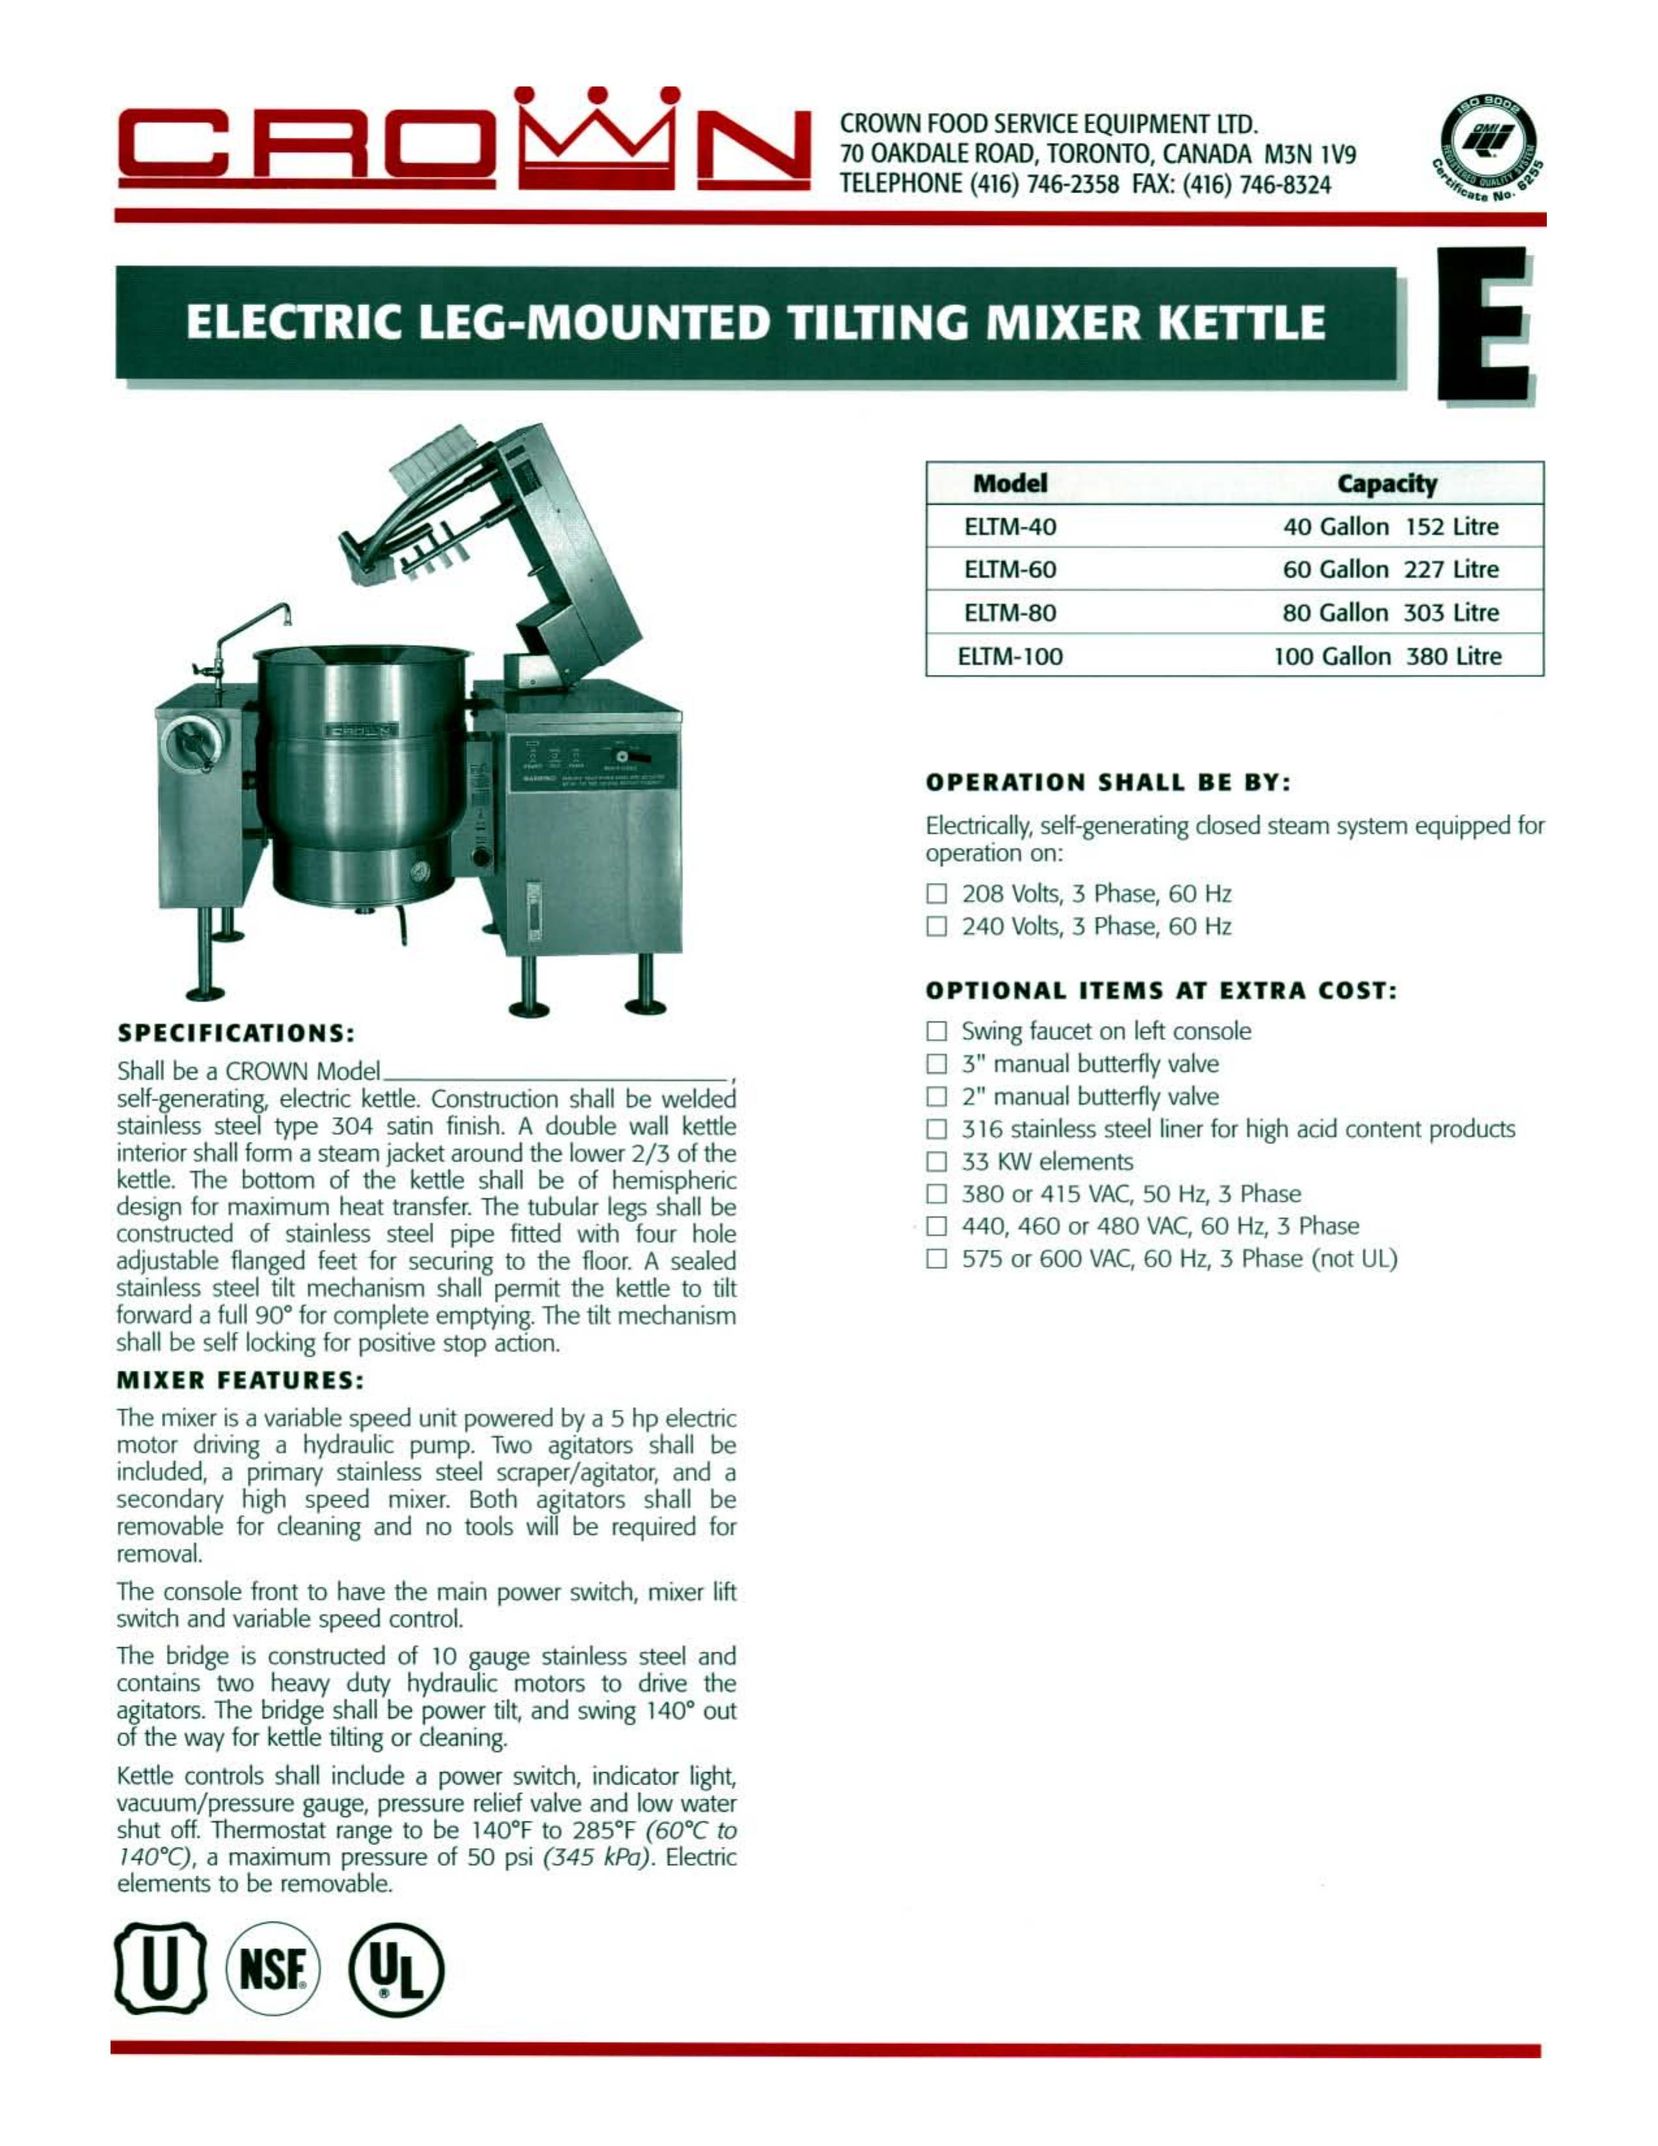 Crown Equipment ELTM-60 Hot Beverage Maker User Manual